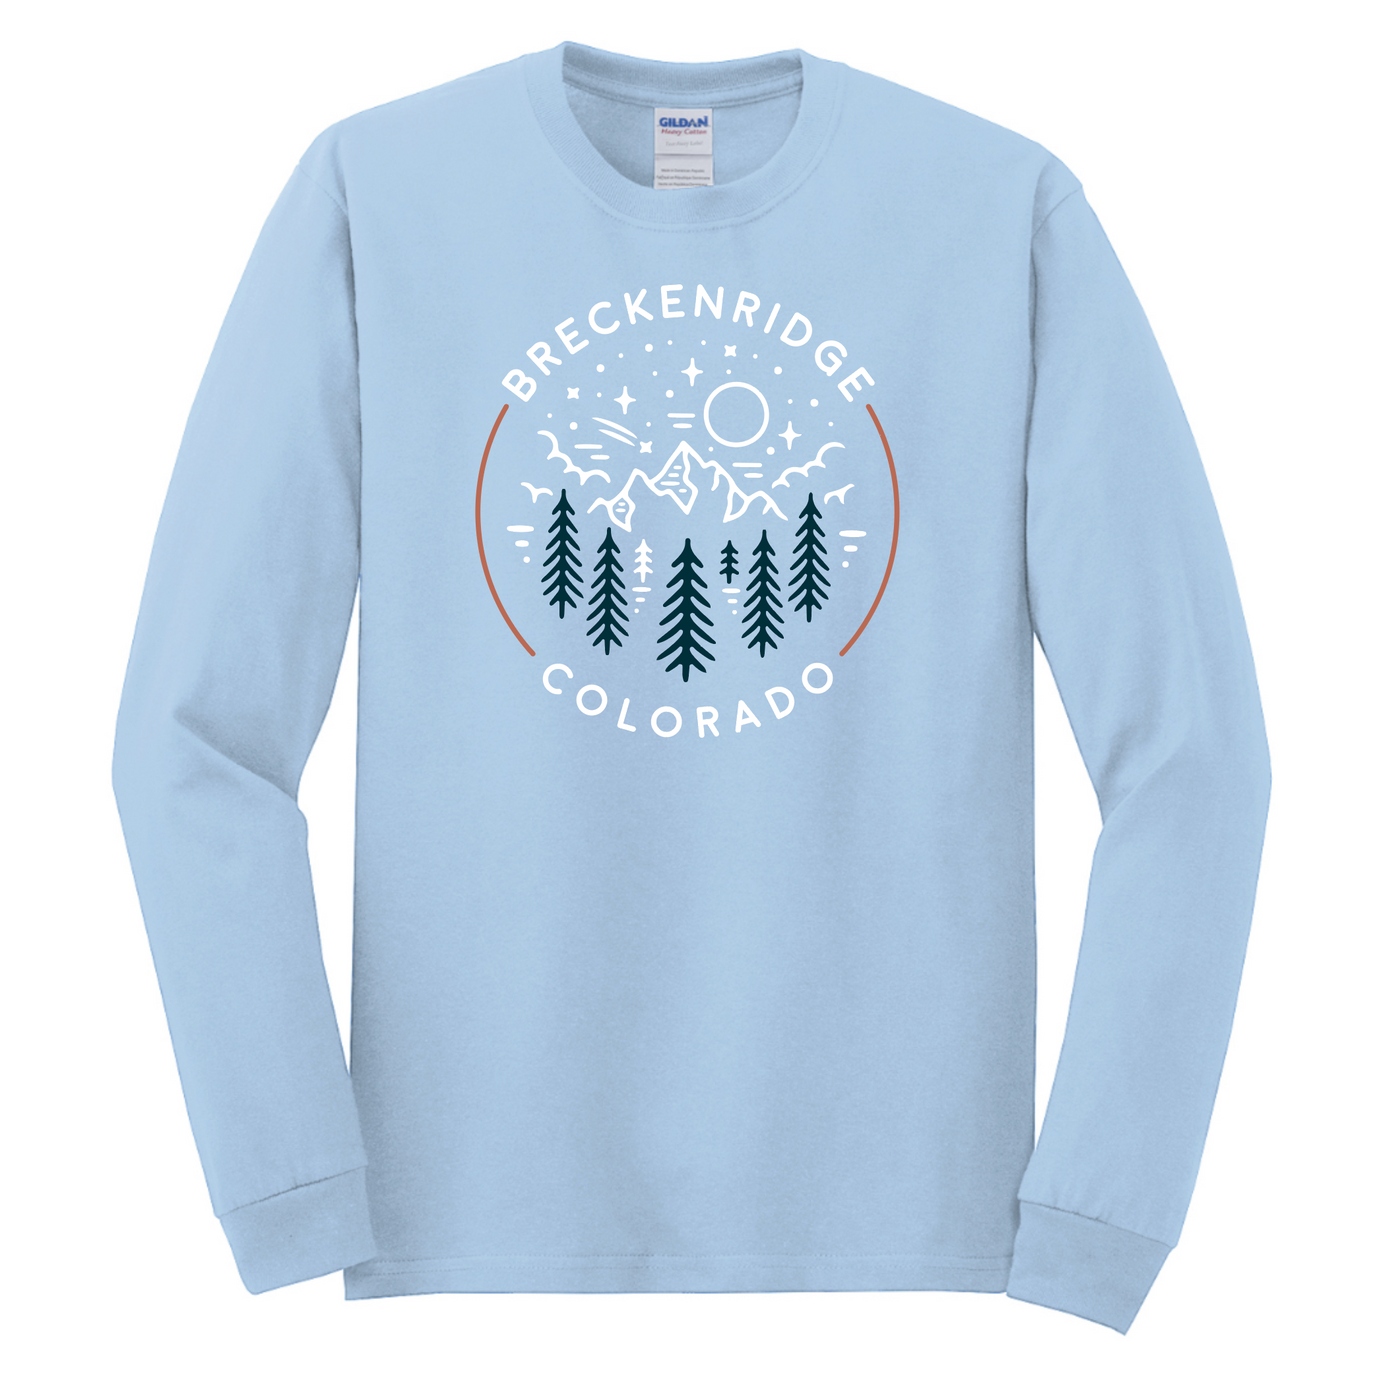 The Breckenridge Campfire Mountain Long Sleeve Shirt